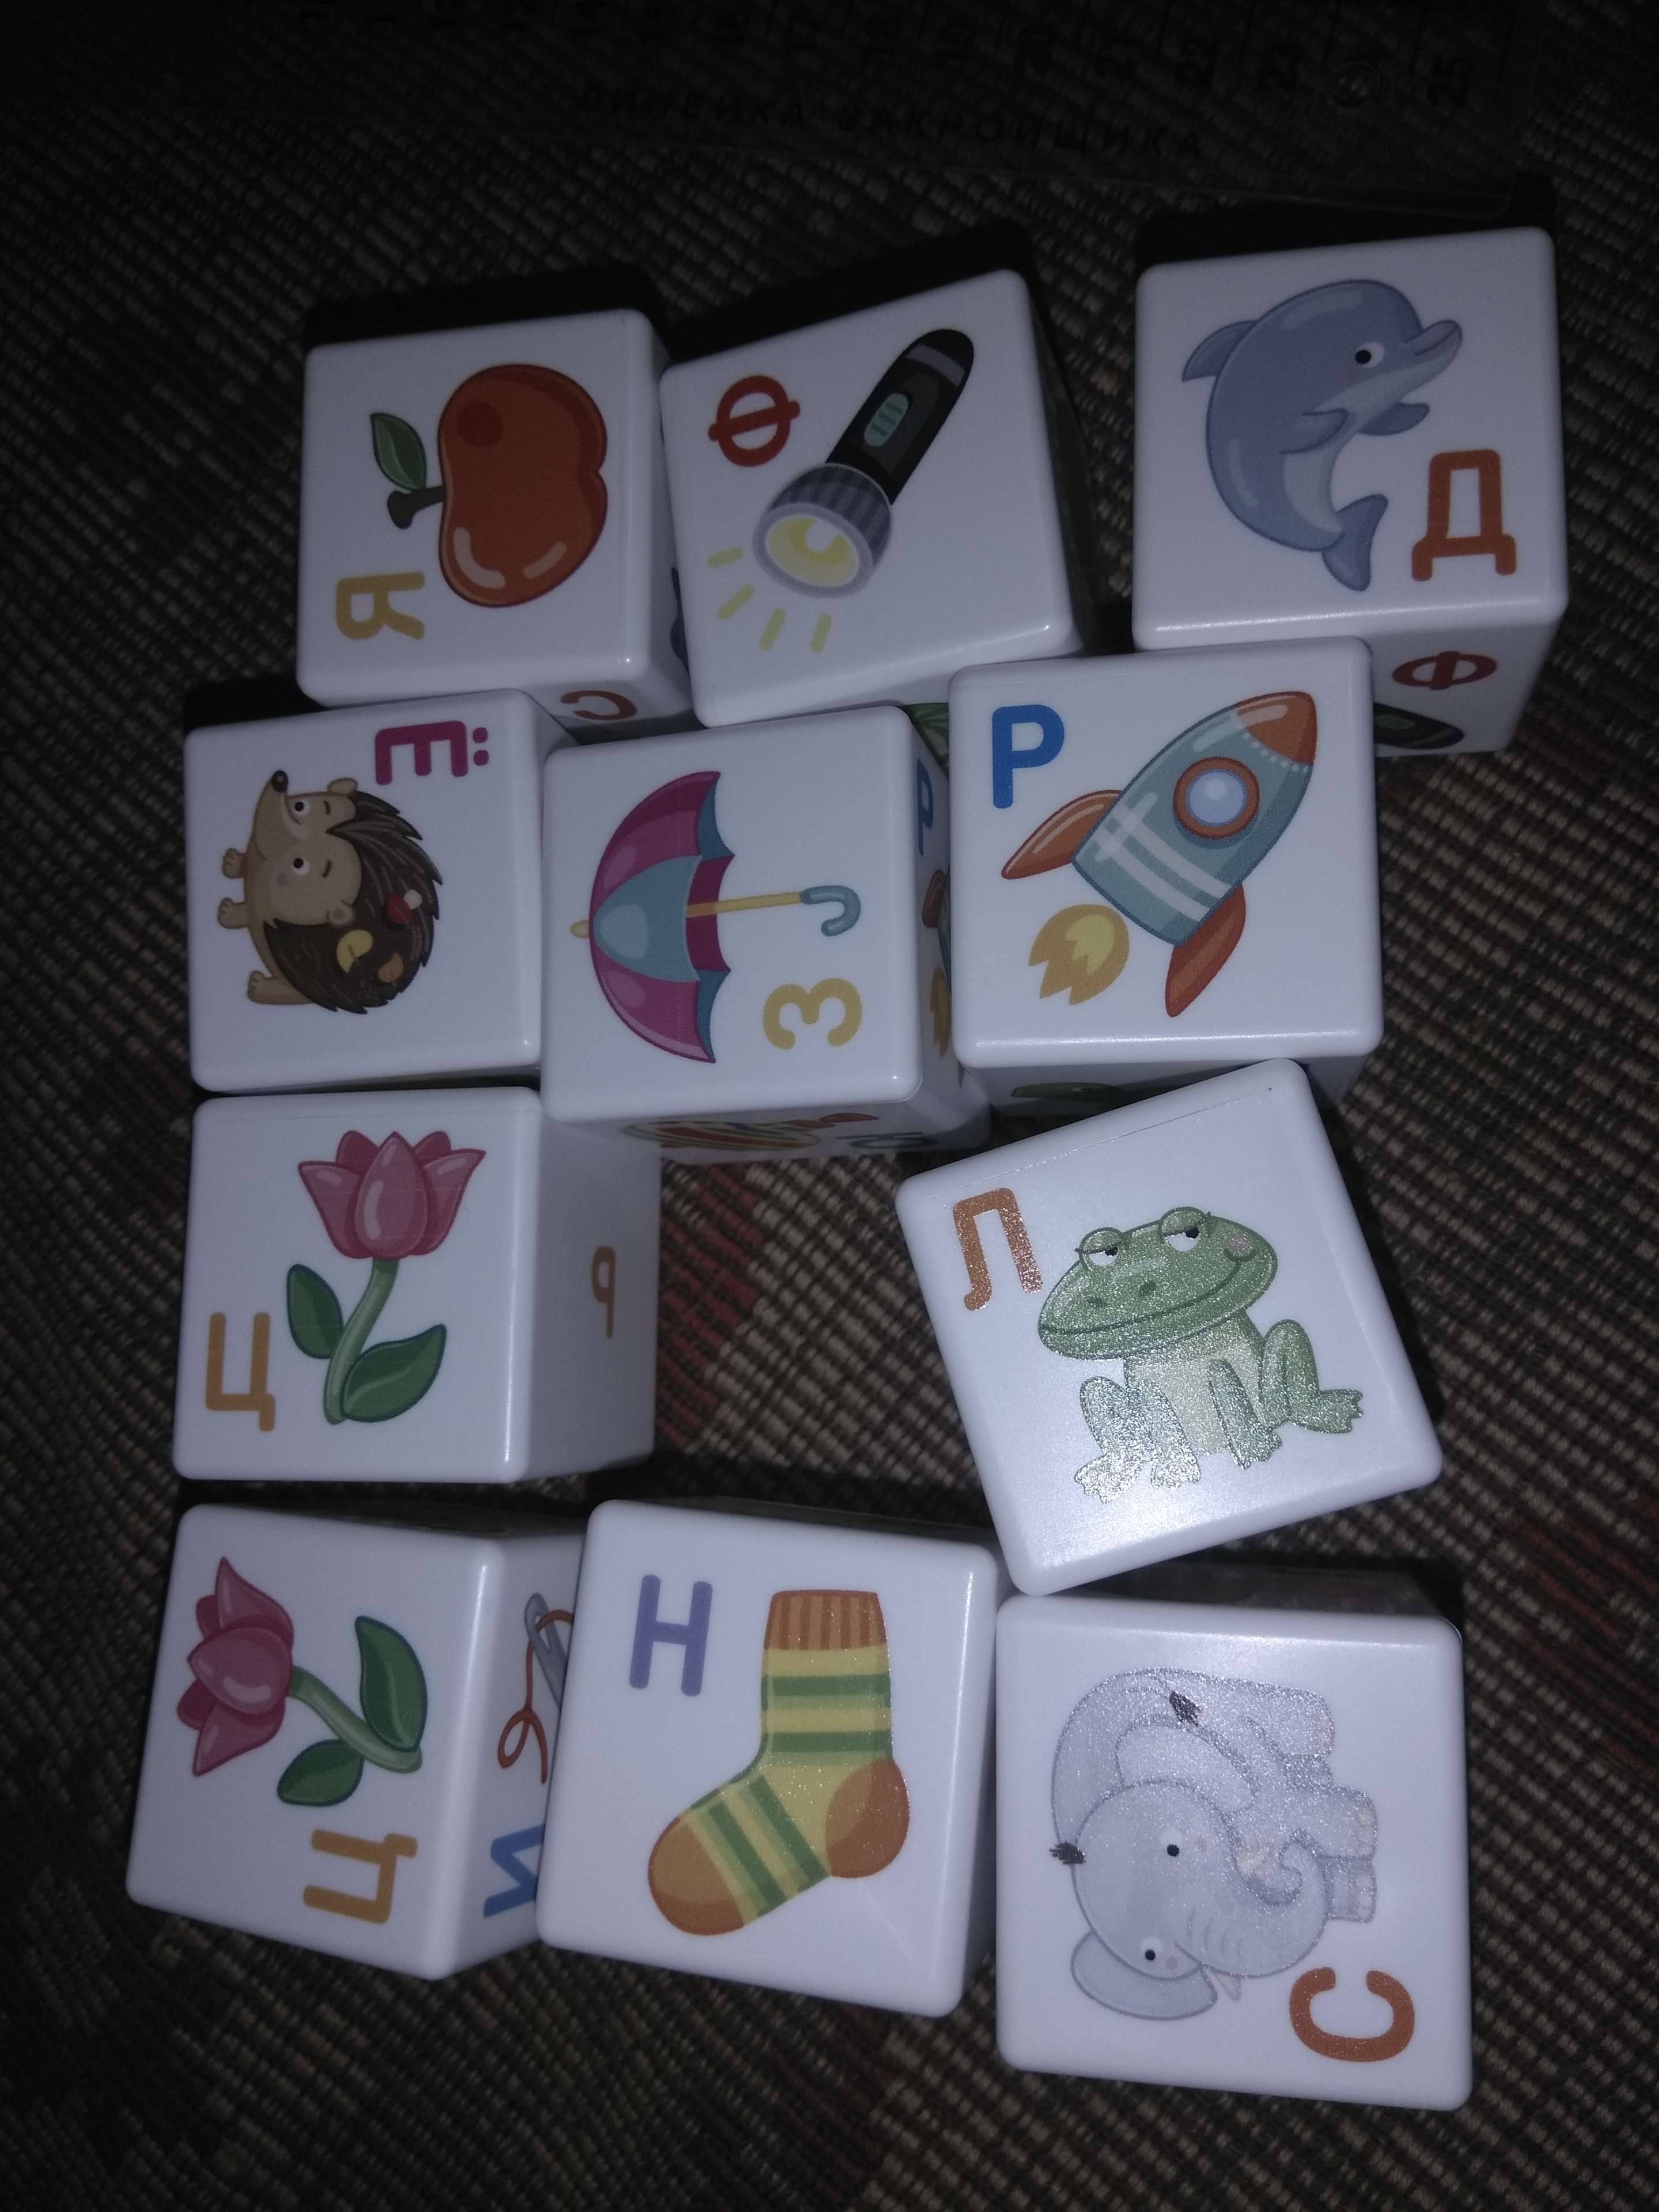 Фотография покупателя товара «Кубики для умников. Учим алфавит», 12 штук